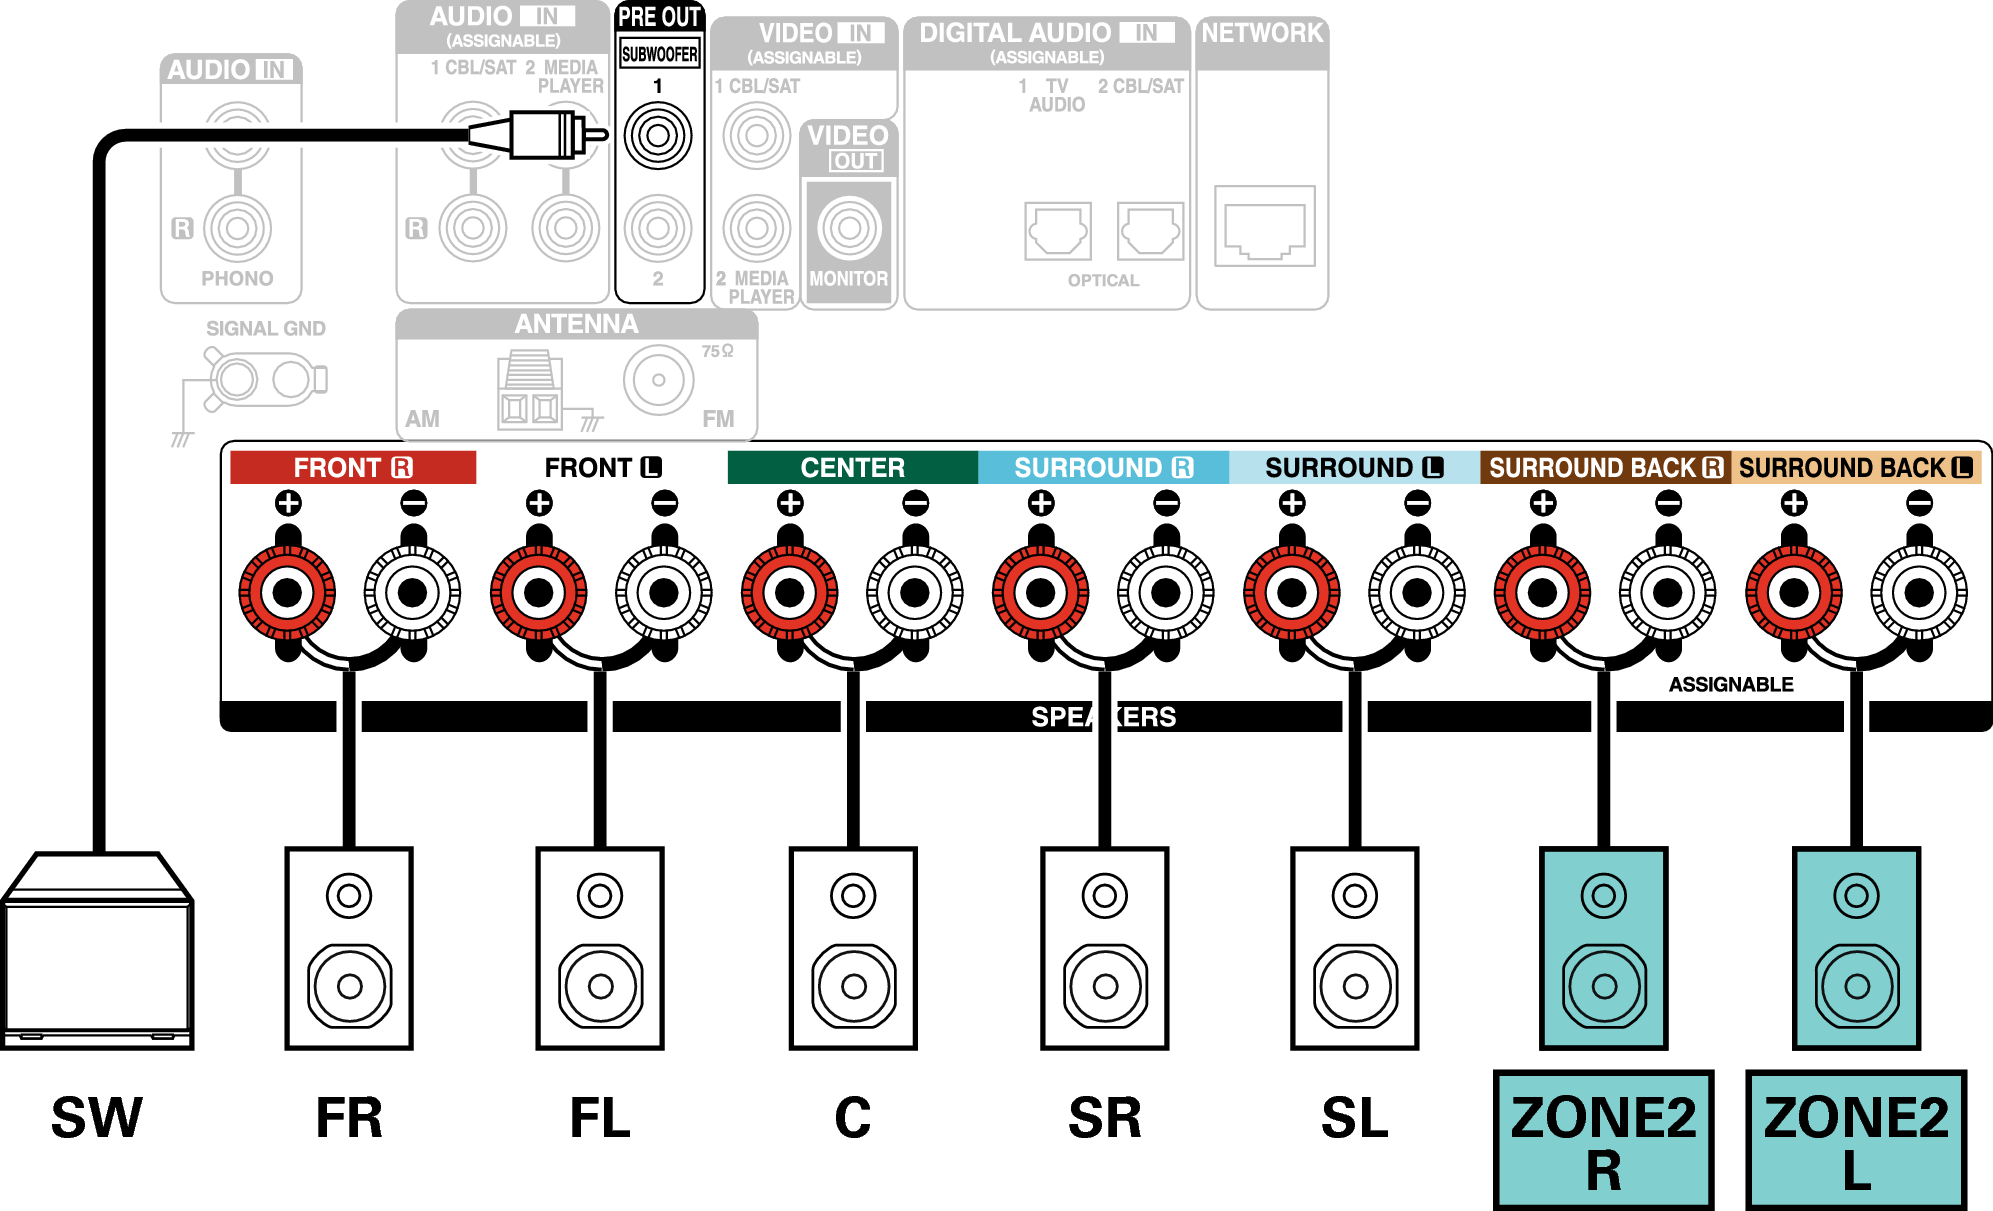 Conne SP 5.1 ZONE2 X16E2